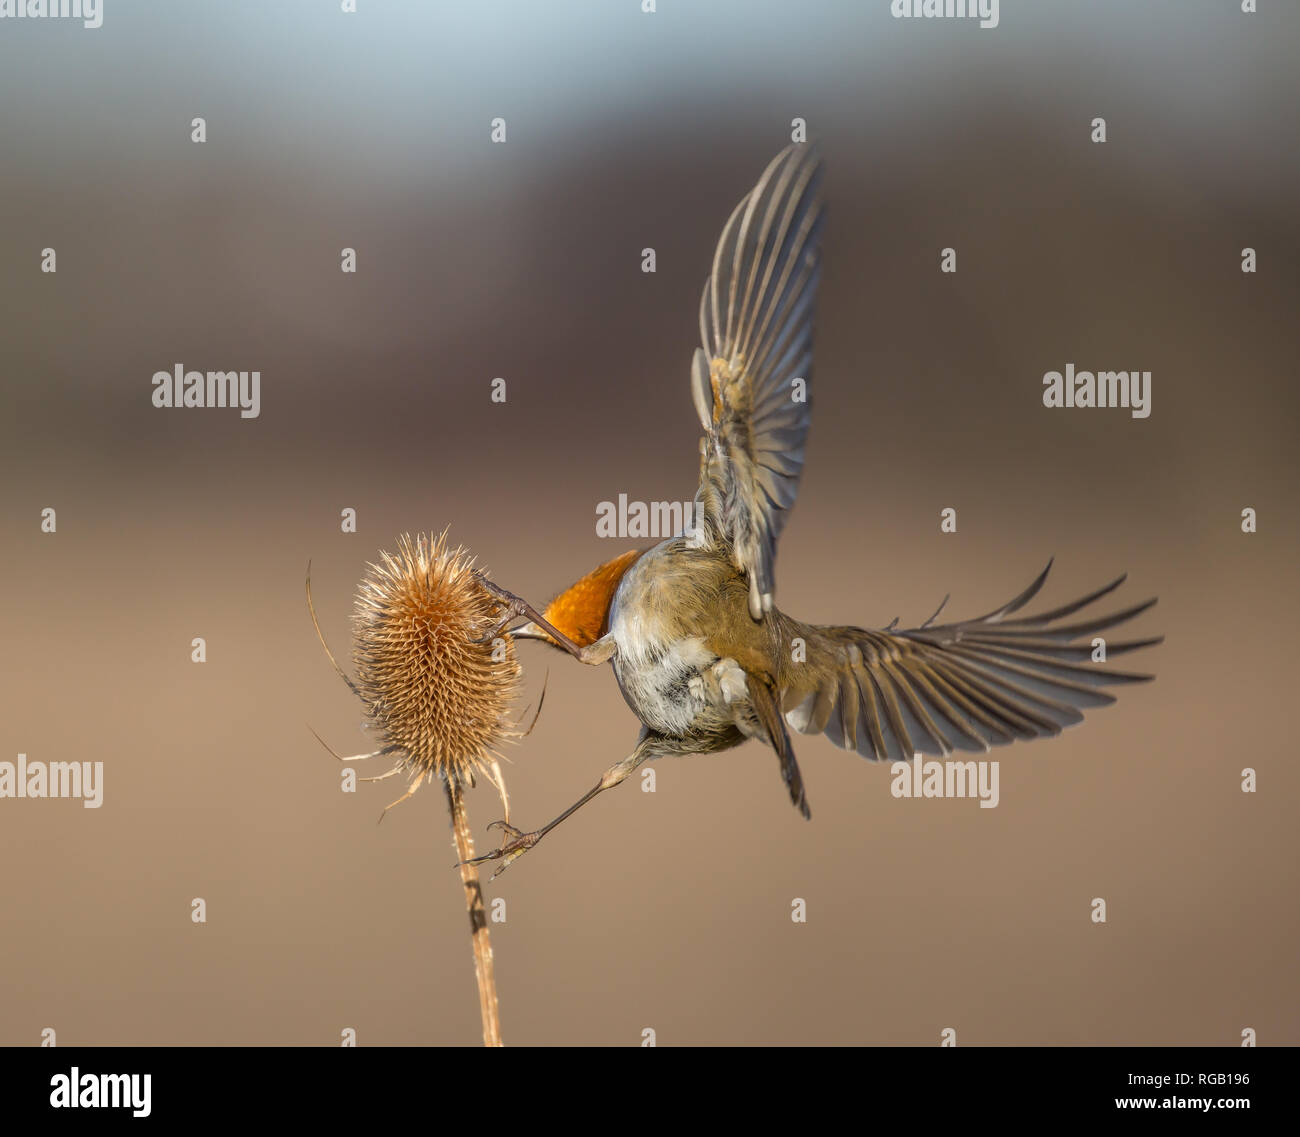 Vista trasera de cerca, salvaje Reino Unido robo pájaro (Erithacus rubecula) aislado al aire libre alimentación en espinoso alas de cucharadita propagación amplia. Robin en detalle desde atrás. Foto de stock